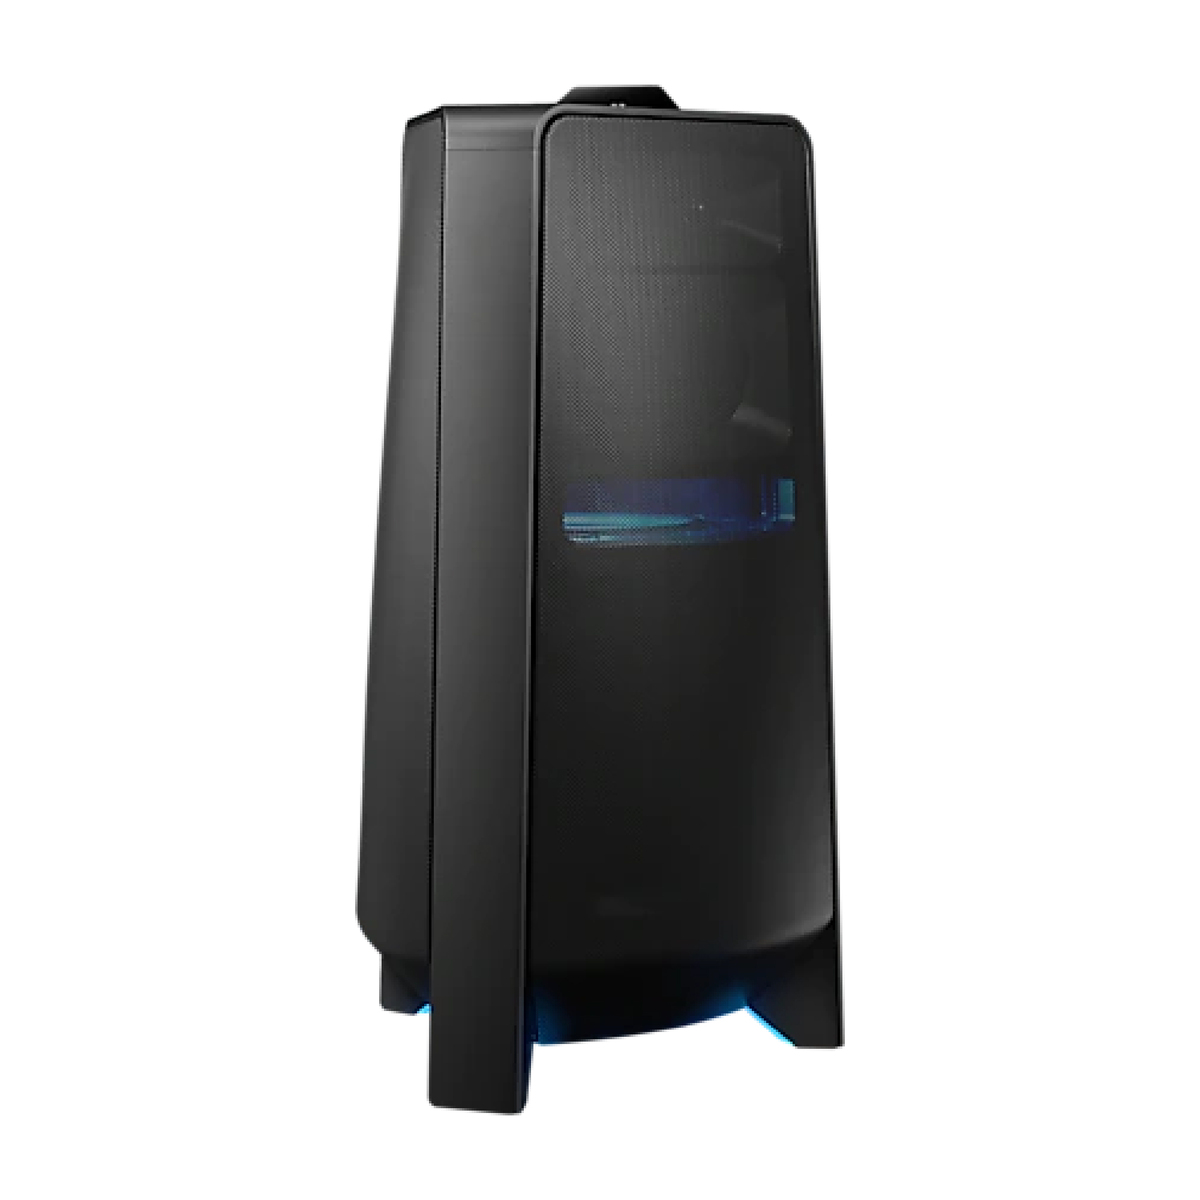 Samsung Sound Tower MX-T70/ZN 1500W